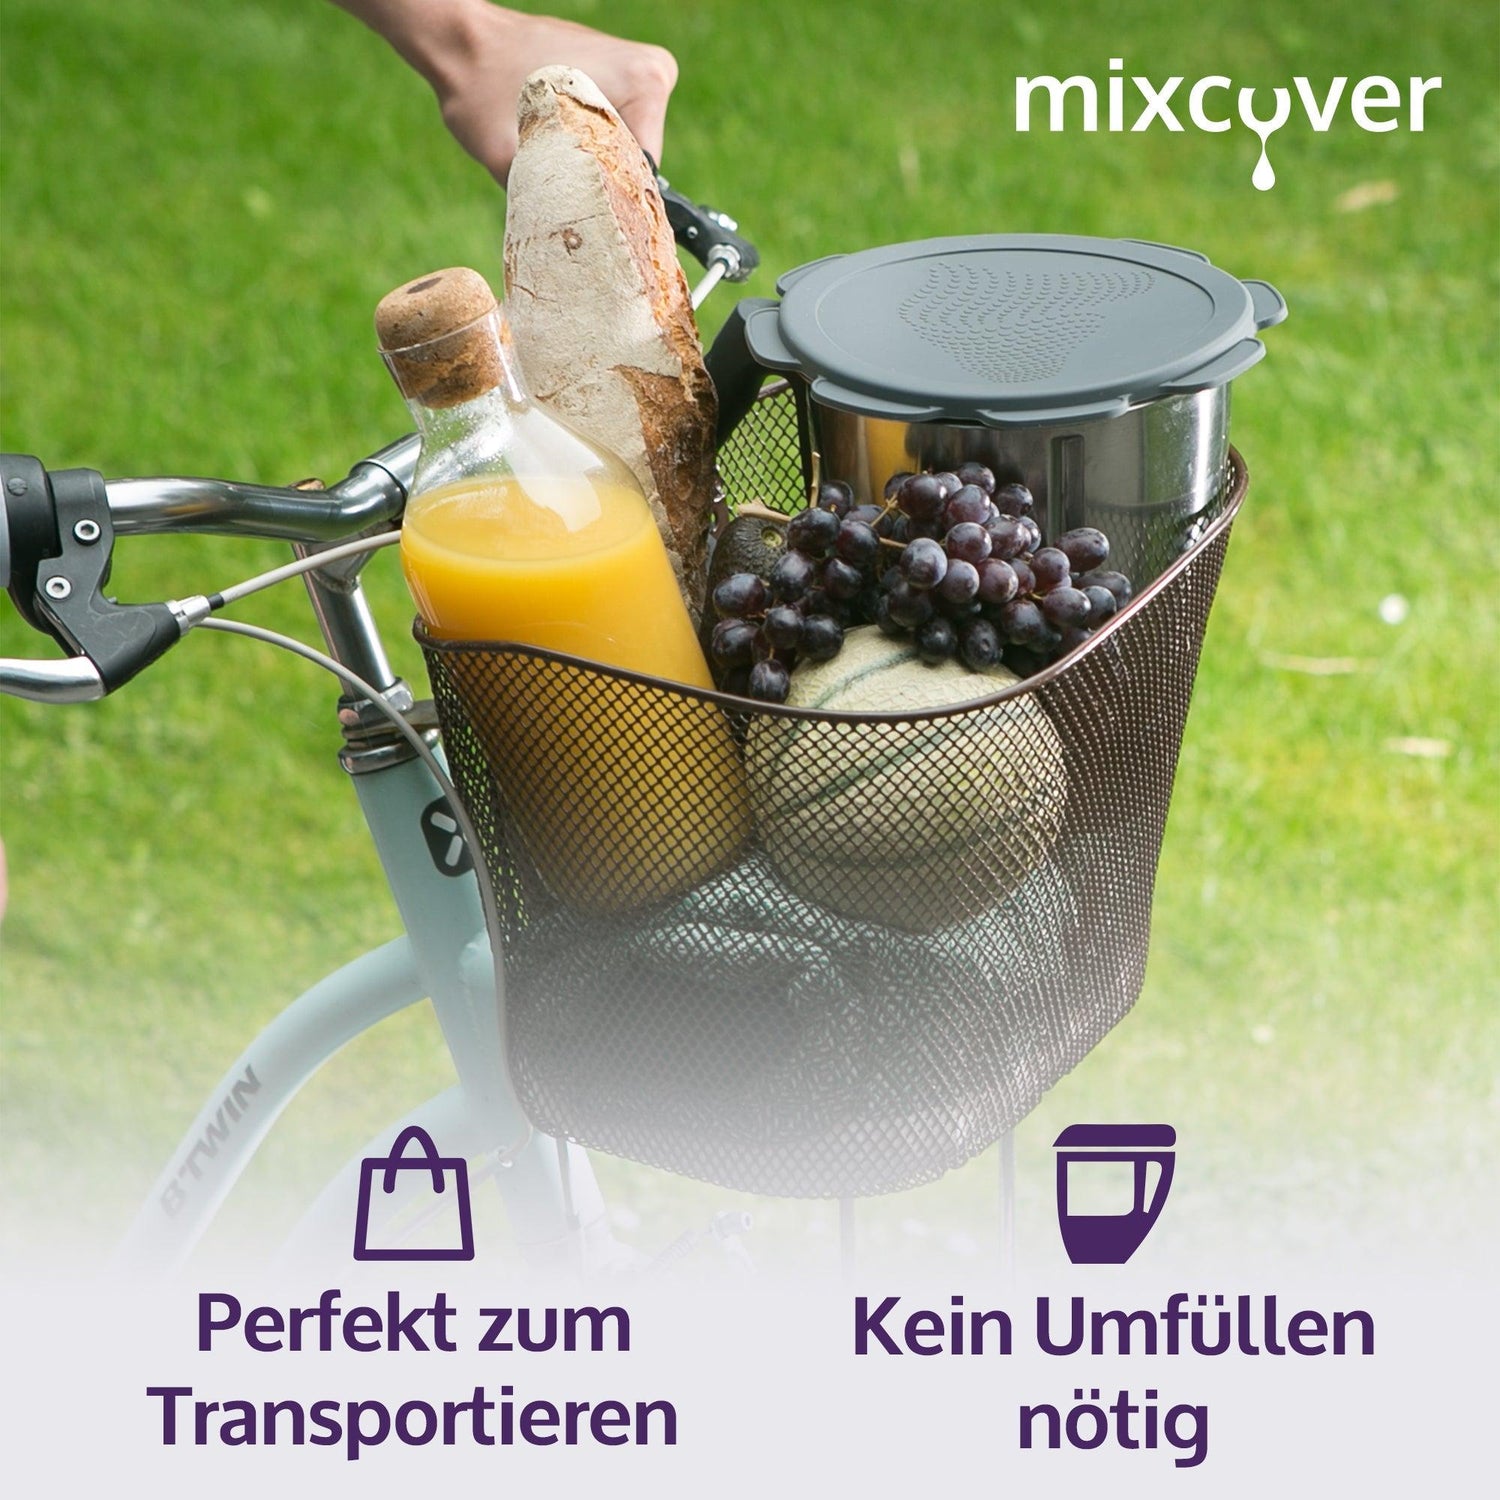 mixcover Silikon Deckel wasser- & geruchsdicht für Thermomix TM5 TM6 Friend Grau - Mixcover - Mixcover